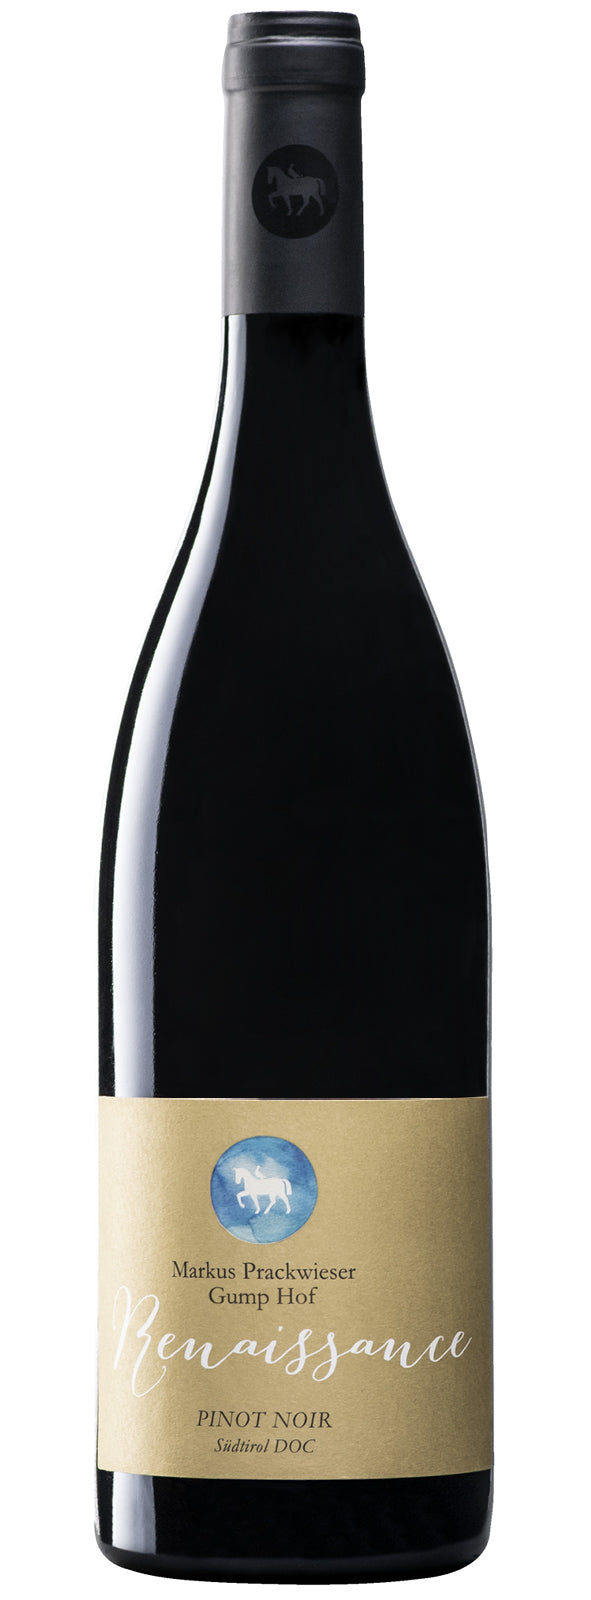 Renaissance Pinot Noir Riserva, 0.75l